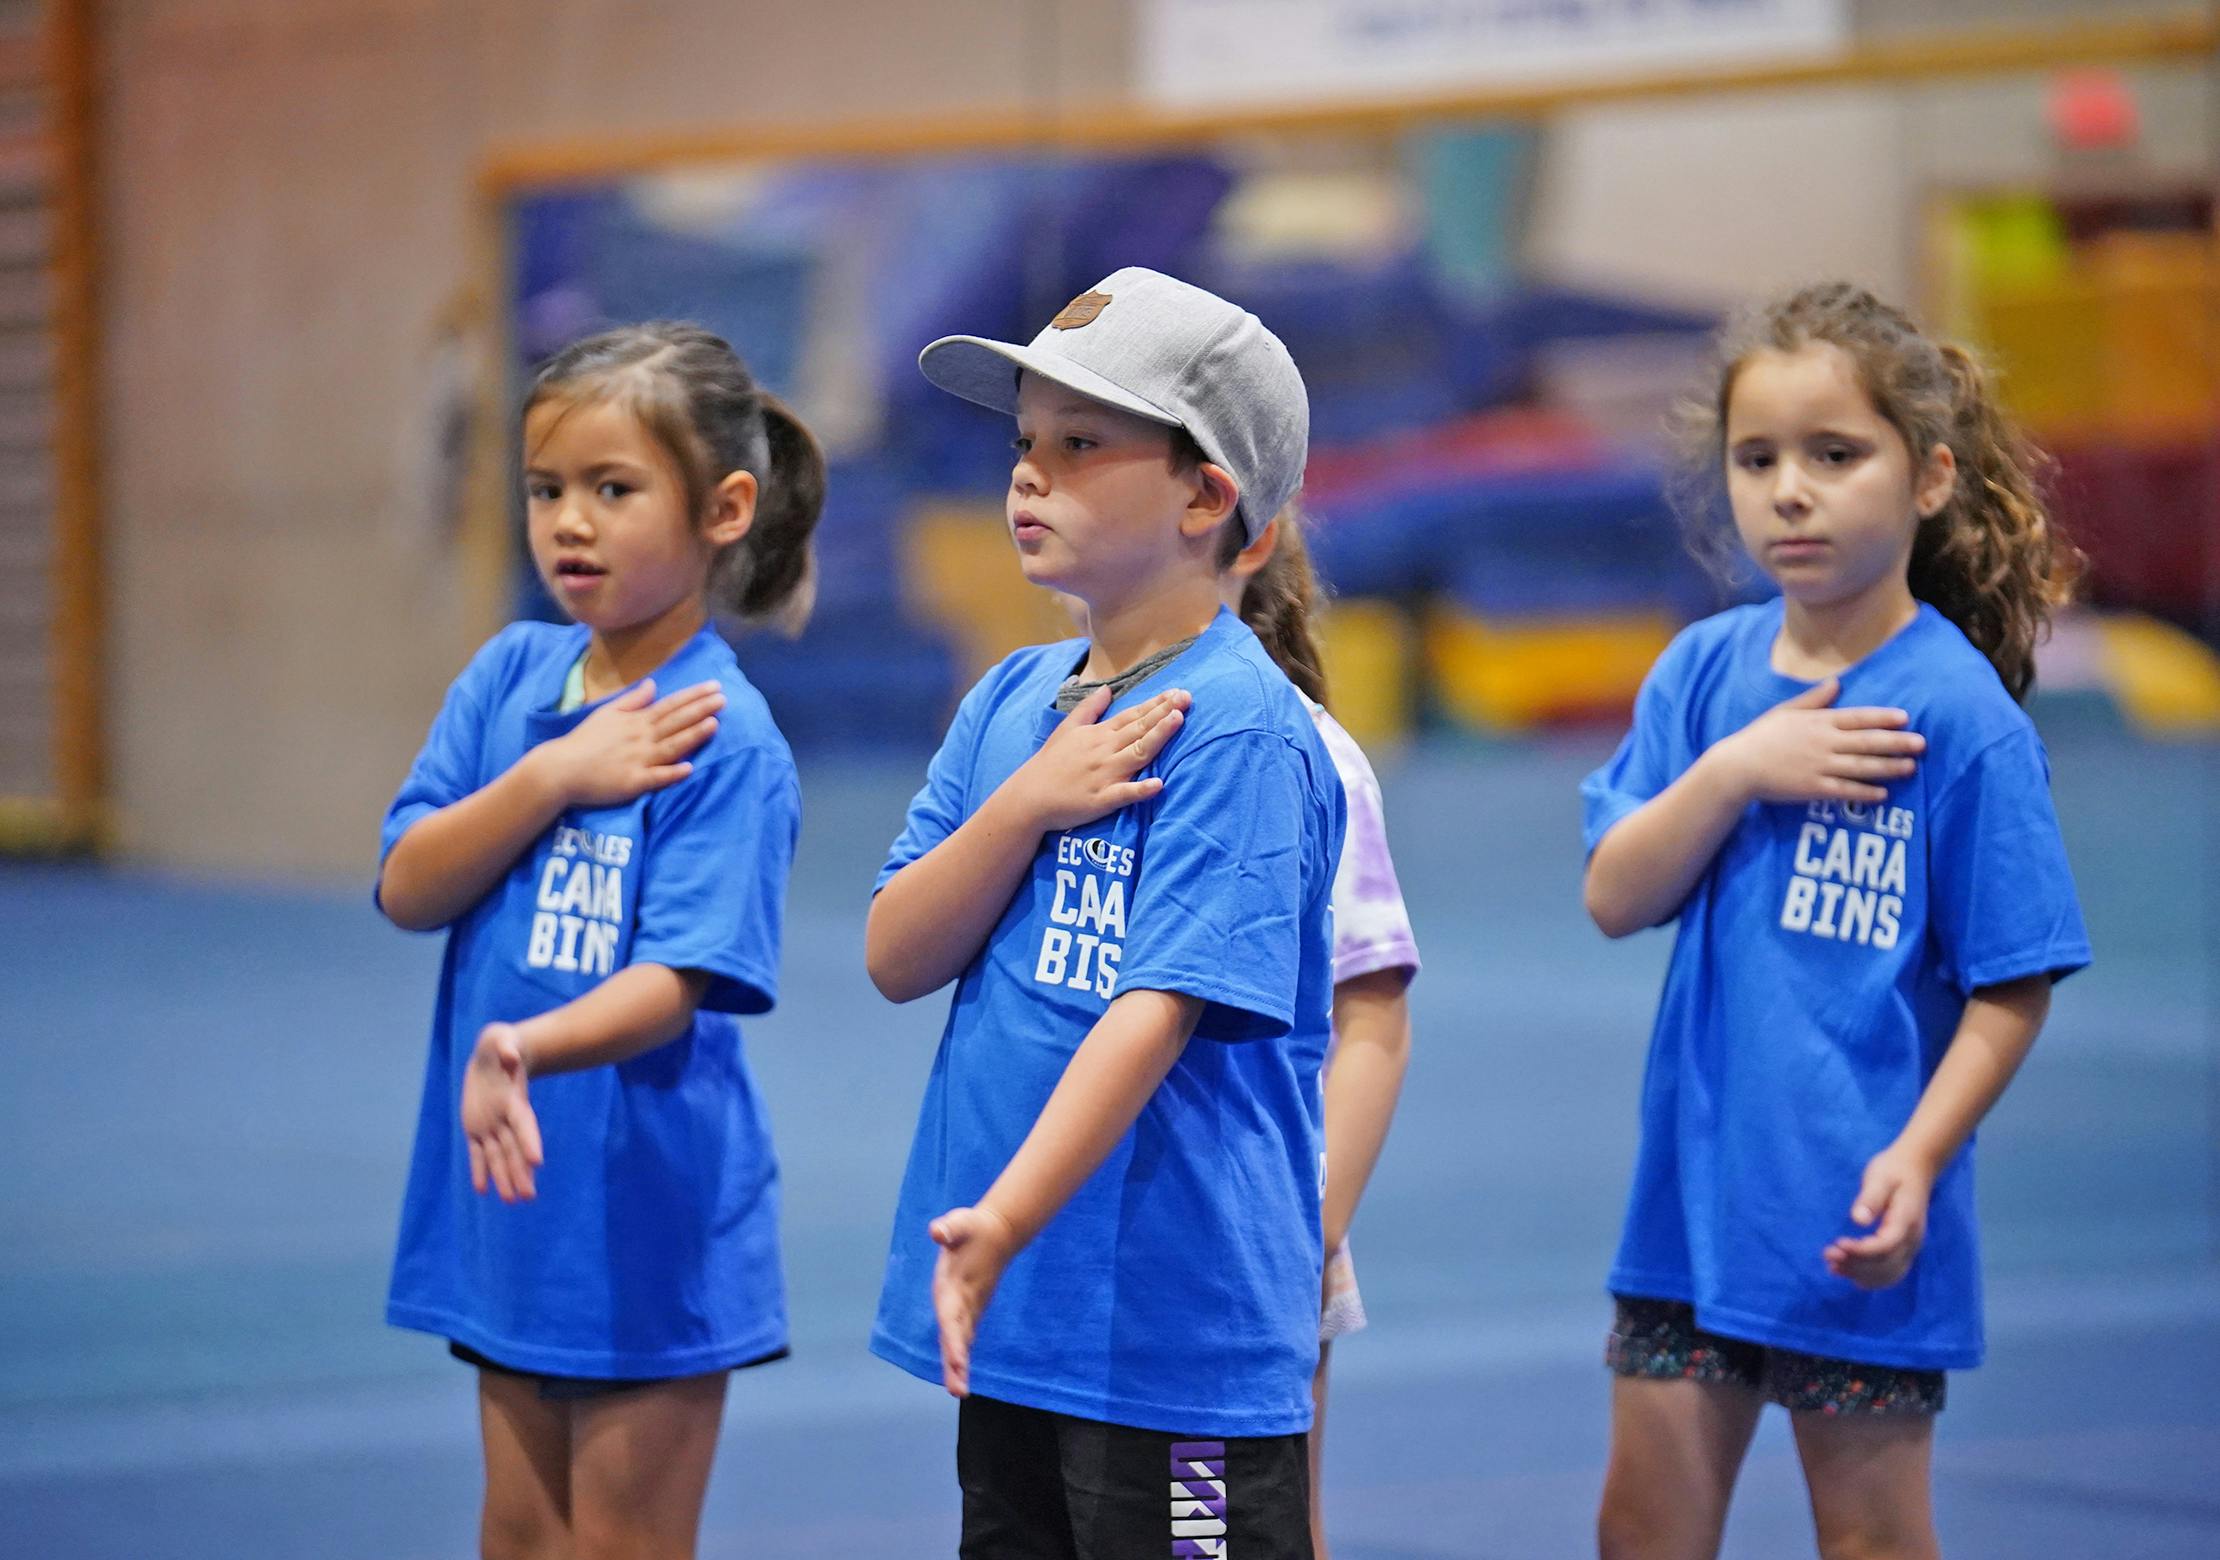 École Carabins cheerleading 6 à 8 ans - Écoles Carabins CEPSUM